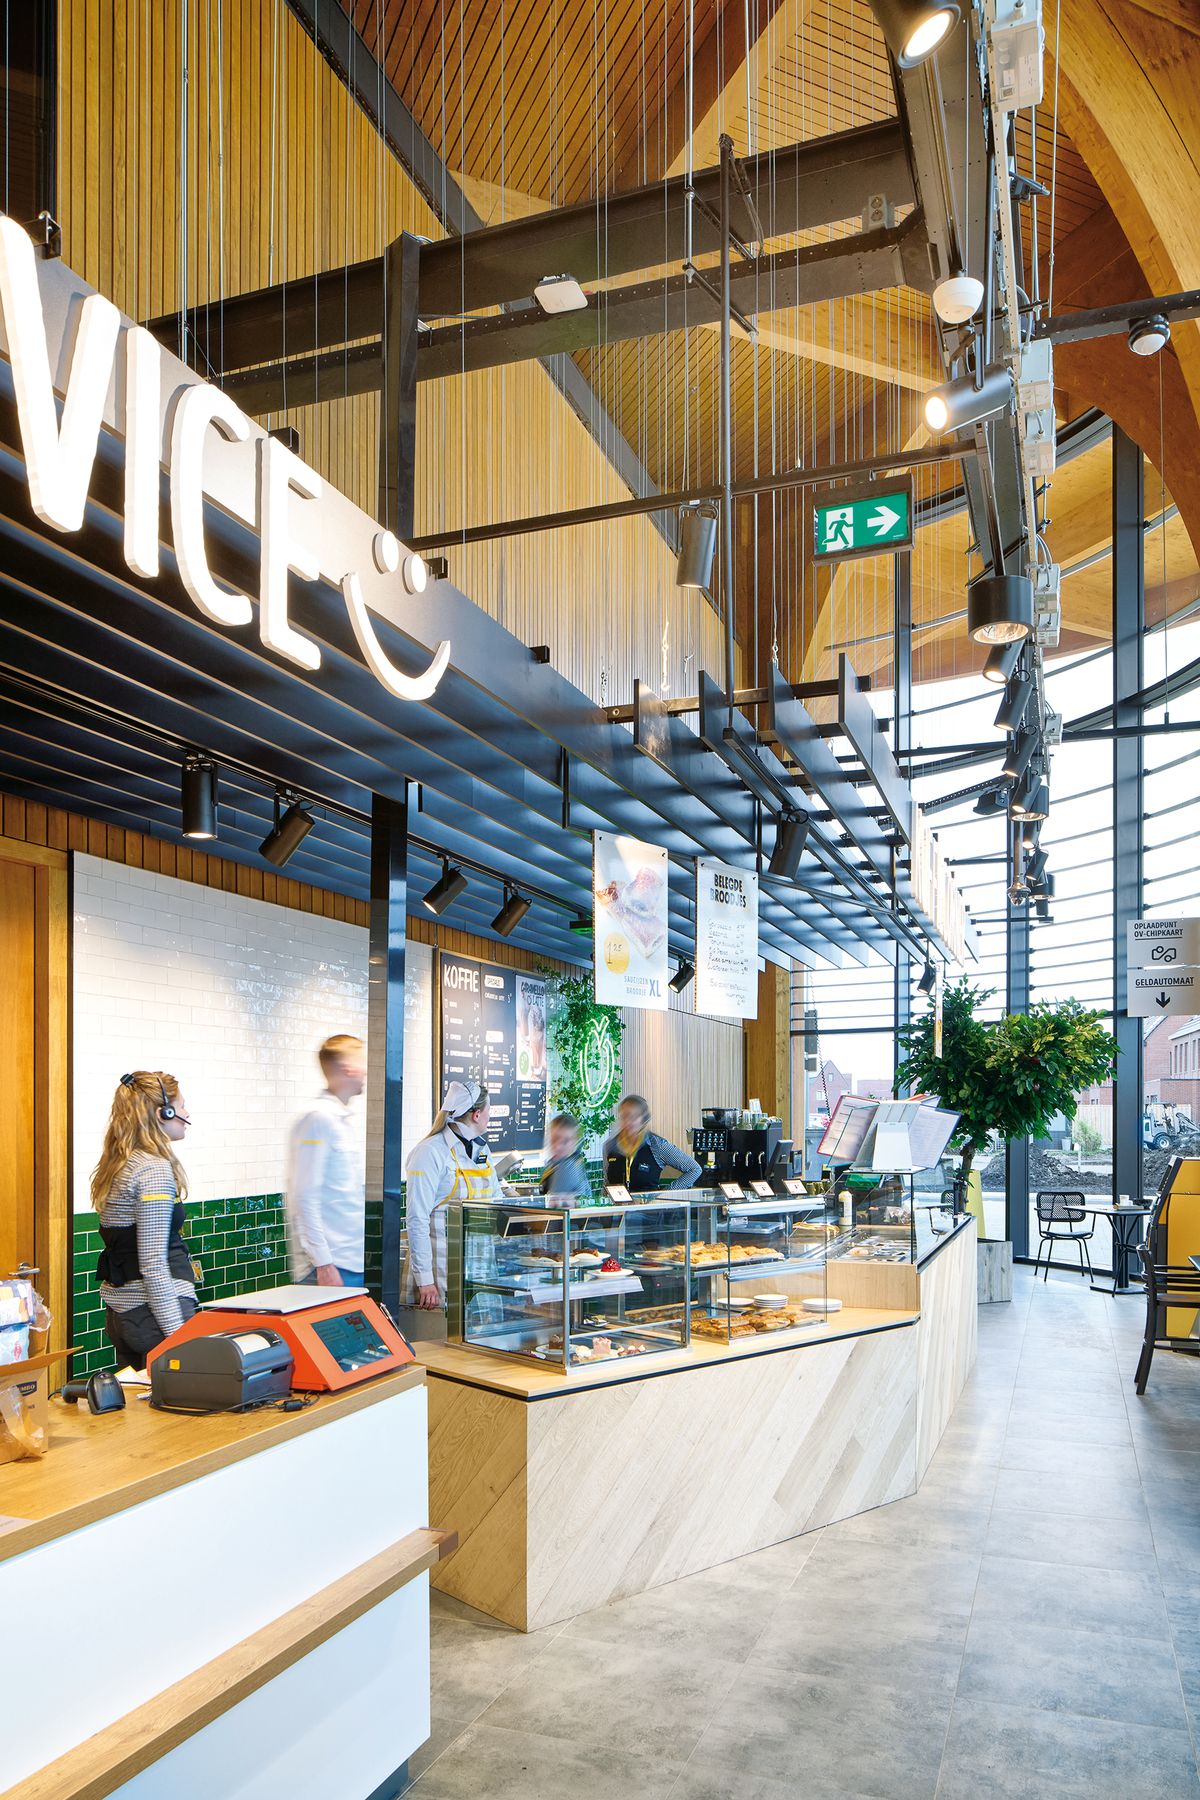 Supermarket v holandskom meste Groningen poňali architekti ako novodobú tržnicu a živé komunitné centrum. Oproti výrazným dreveným klenbám zvolili sivý odtieň dlažby, ktorá je funkčná a zároveň decentná.